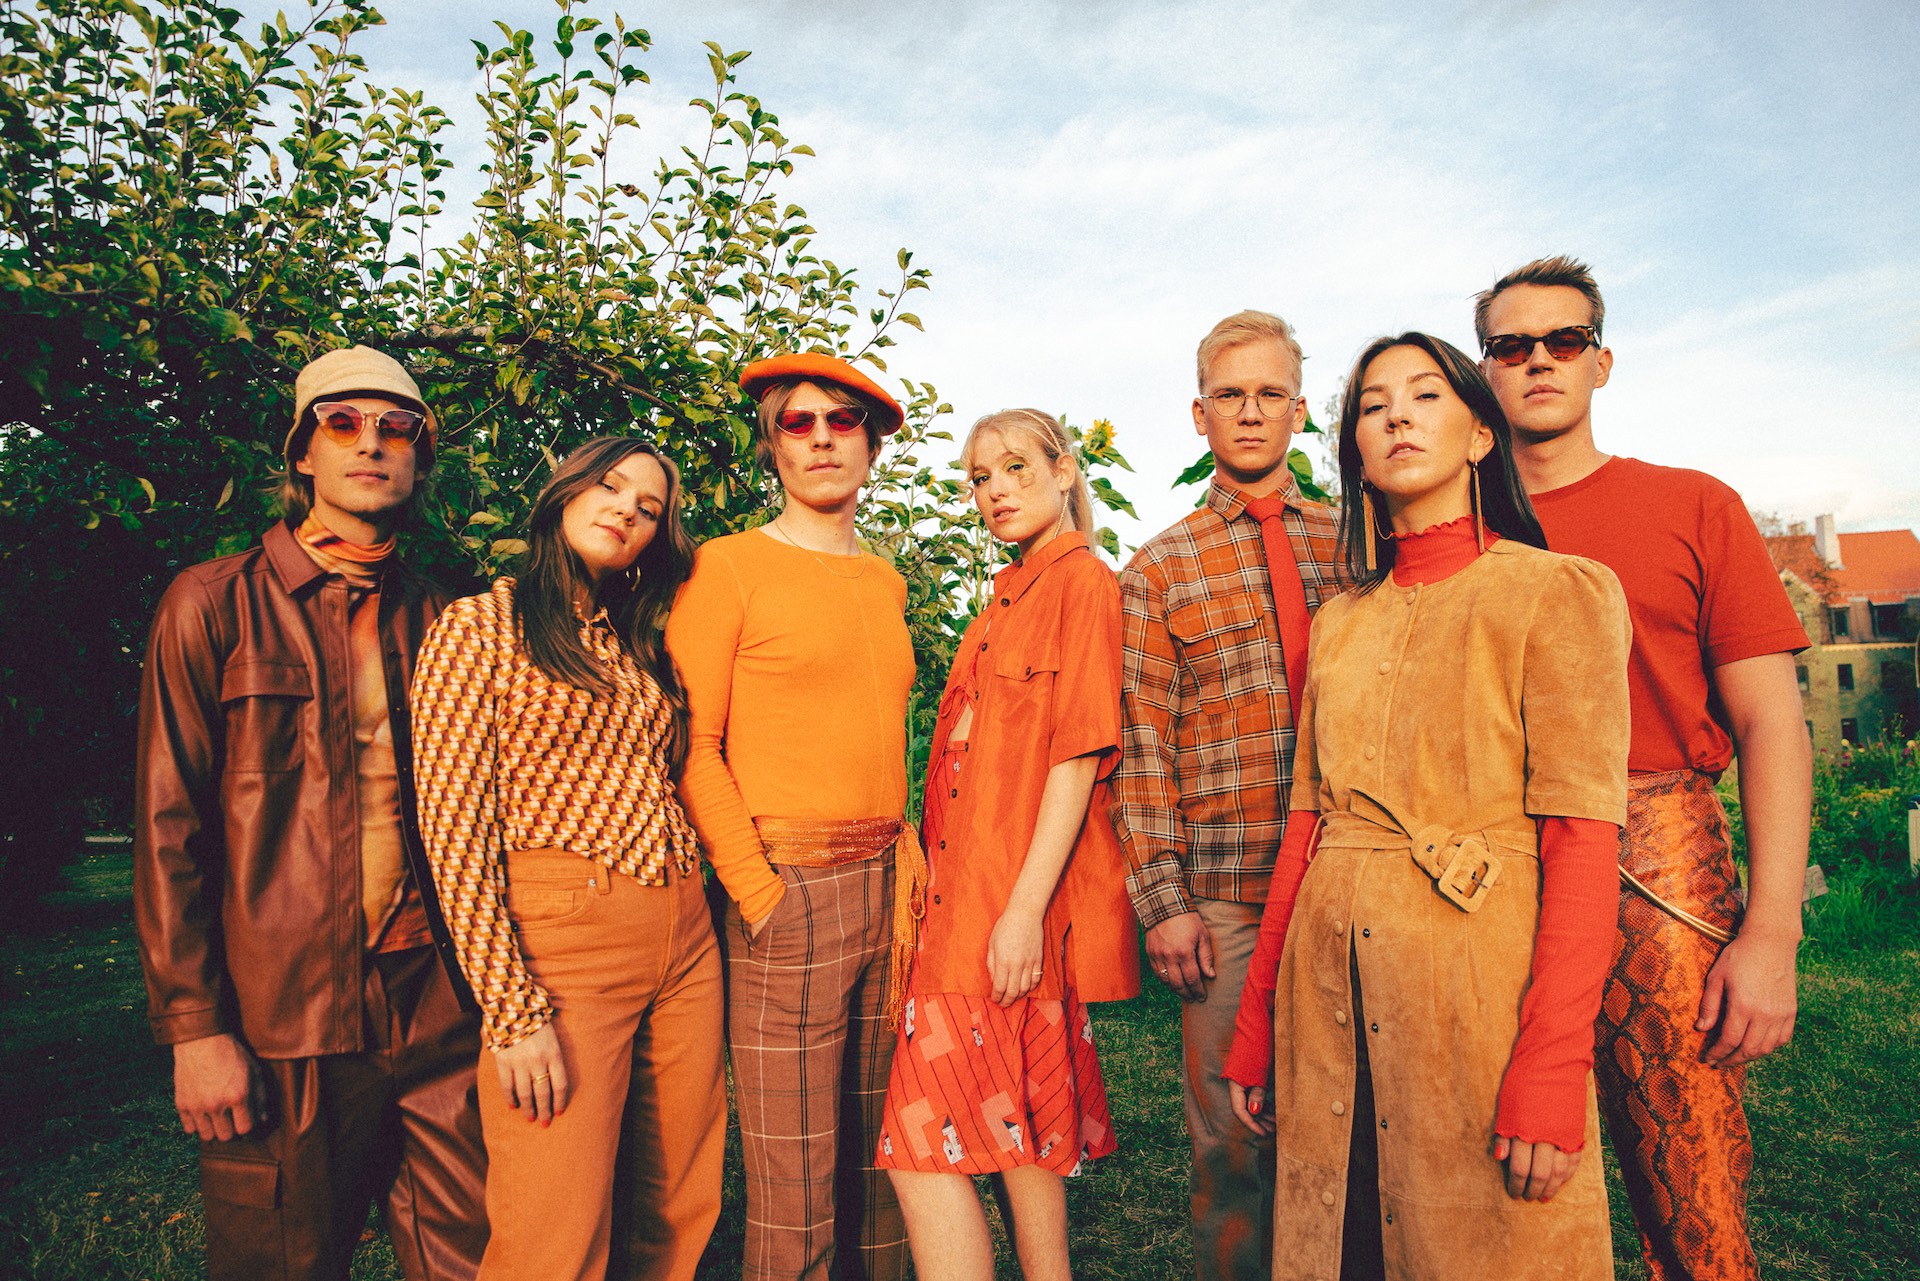 Alle sieben Mitgleider der Gruppe fieh stehen in orangefarbenen Outfits in einem stattgrünen Garten.